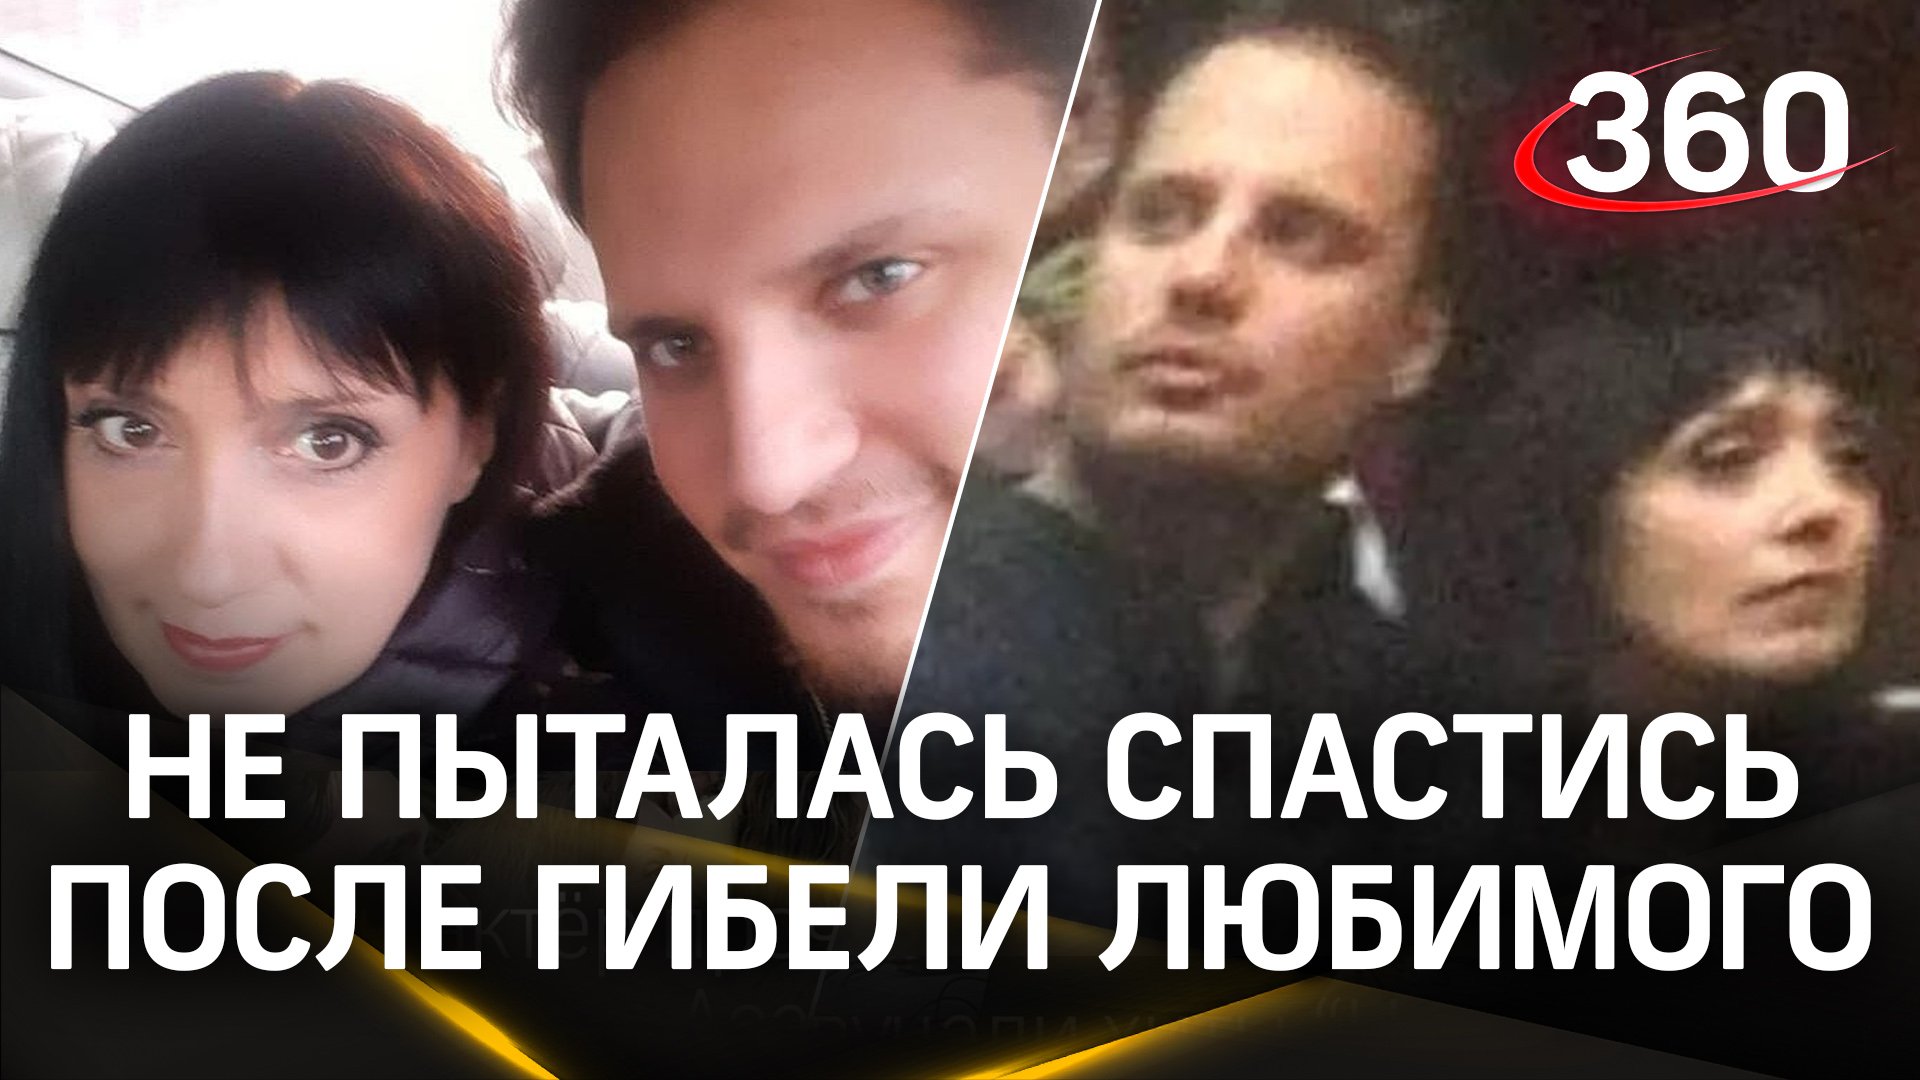 Мать погибшего Максима Вербенина: люди пригибались, а его девушка уже не пыталась спастись